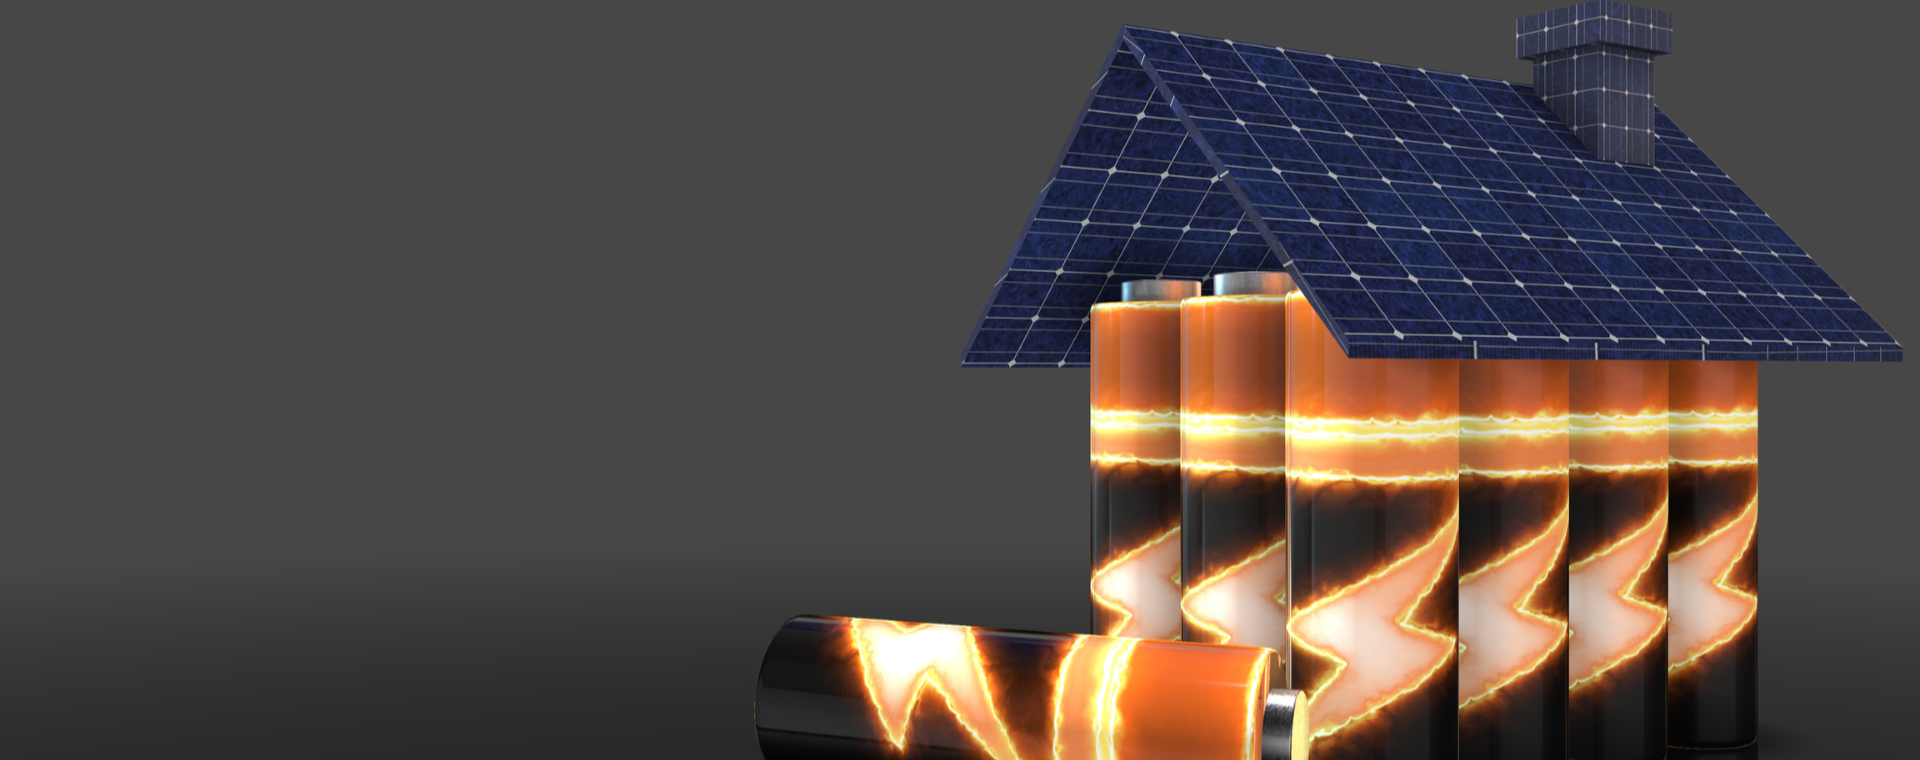 batterie accumulo fotovoltaico a forma di casa